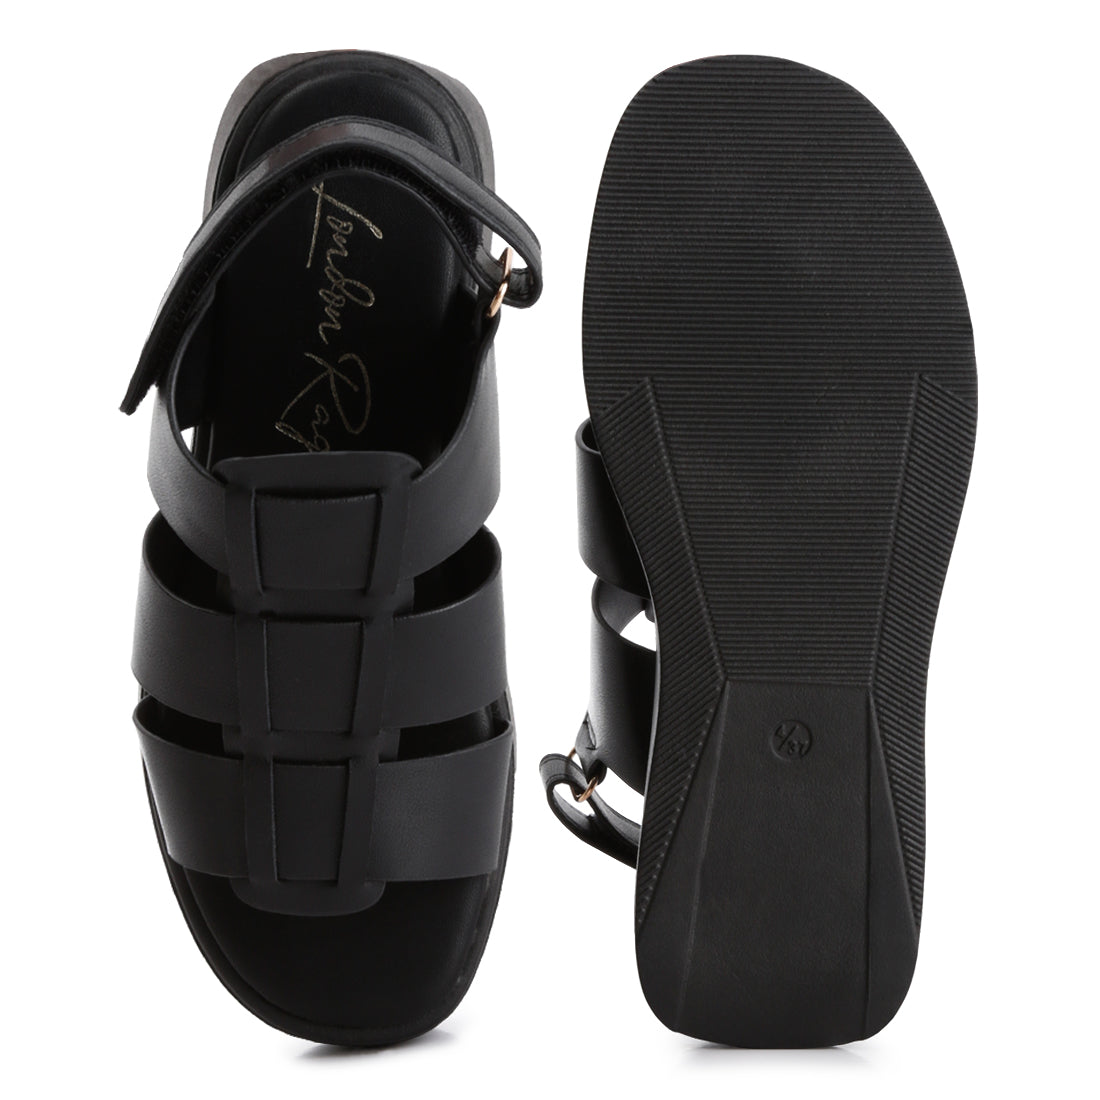 velcro gladiator sandals#color_black